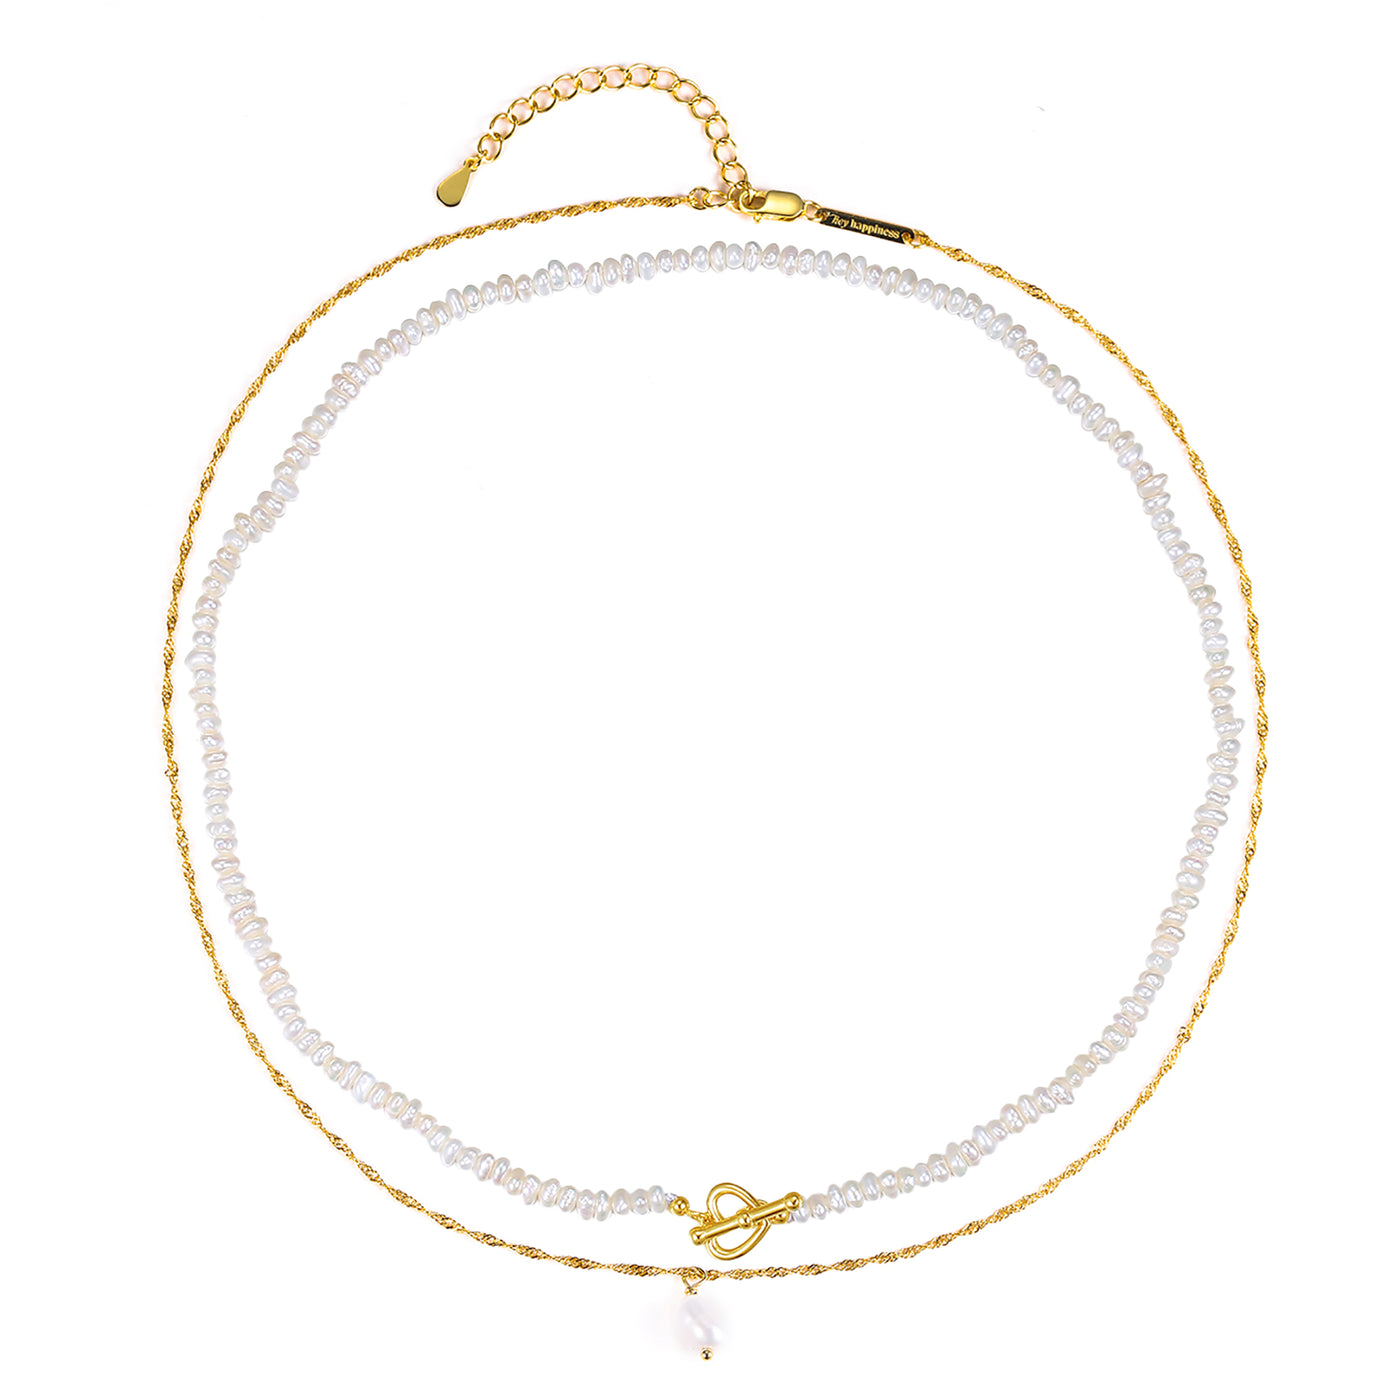 Conjunto de Collares con Perla Plata de Ley 925 en Oro